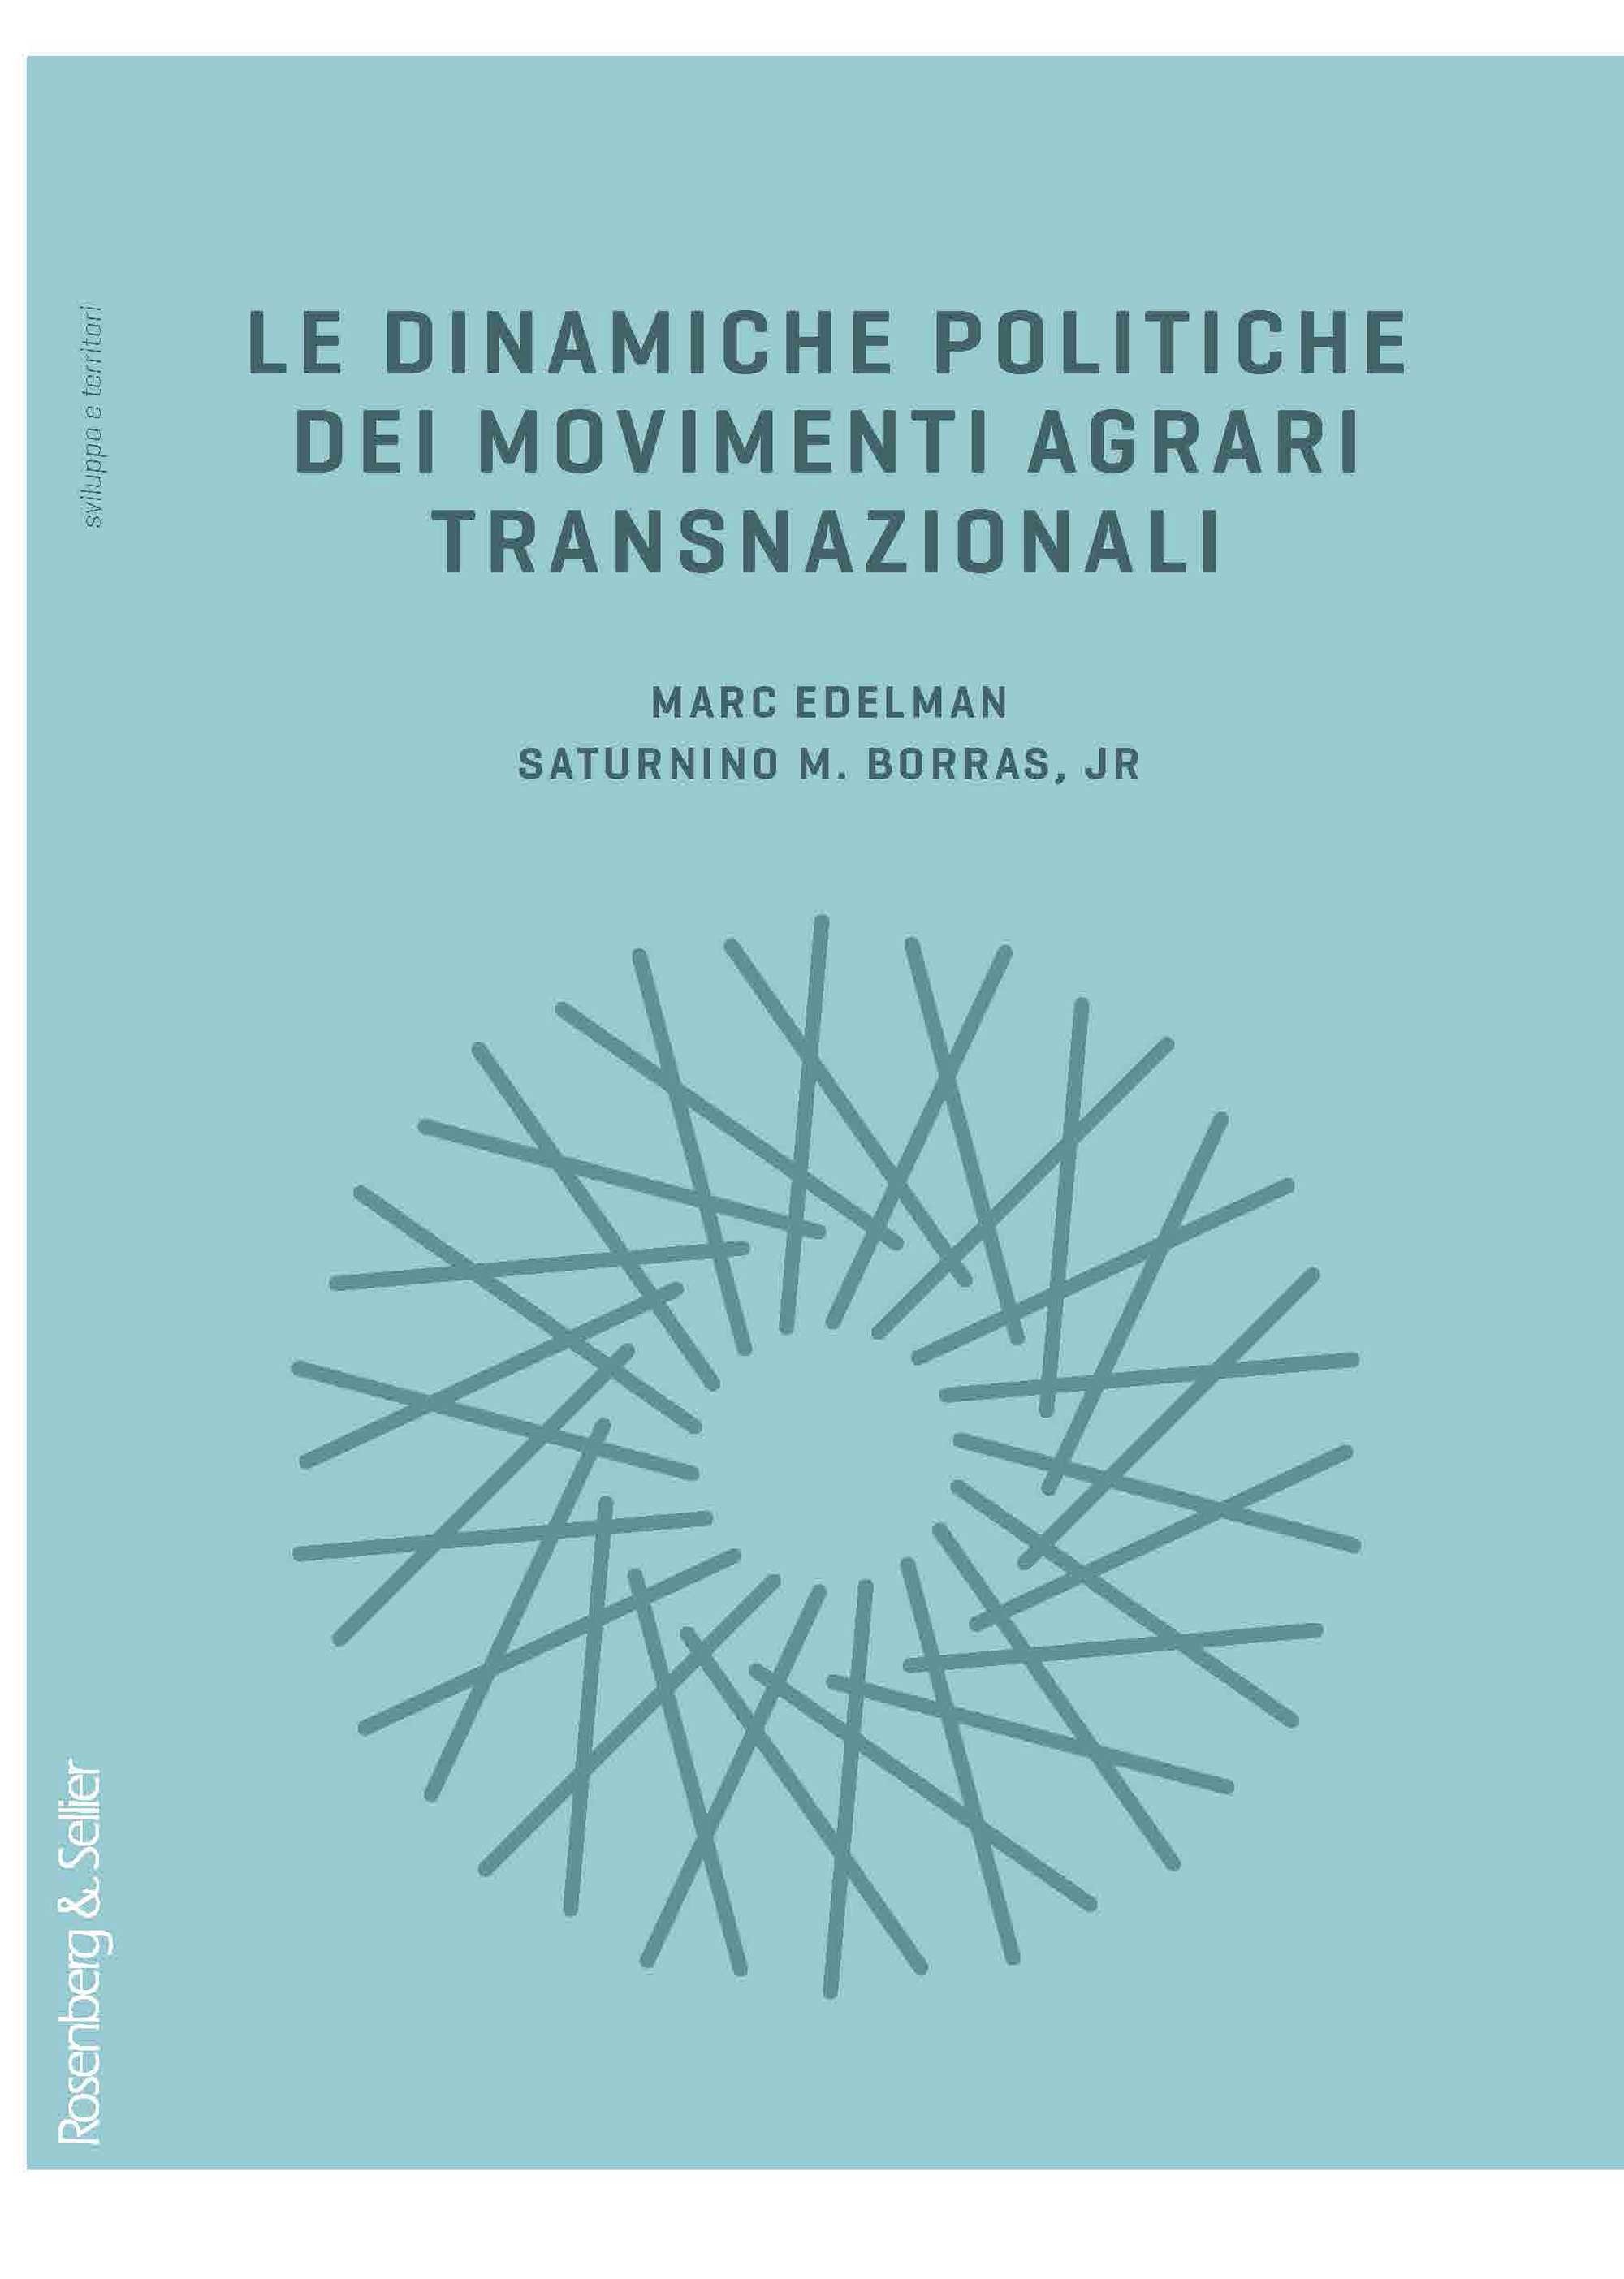 Le dinamiche politiche dei movimenti agrari transnazionali - Librerie.coop